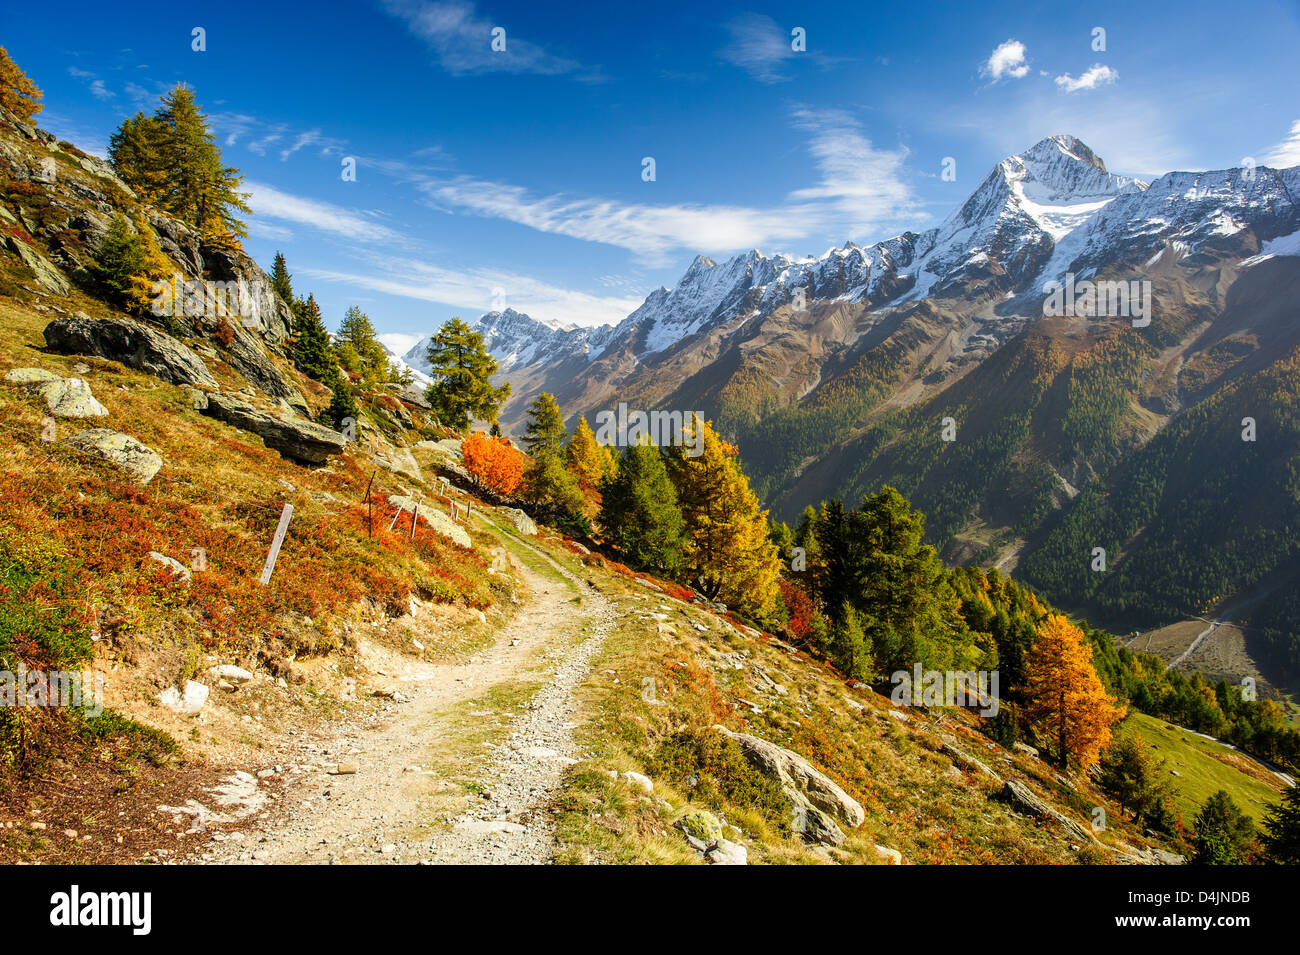 Bietschorn mountain peak in autumn with hiking trail. View from Laucheralp, Loetschental, Wallis, Switzerland Stock Photo